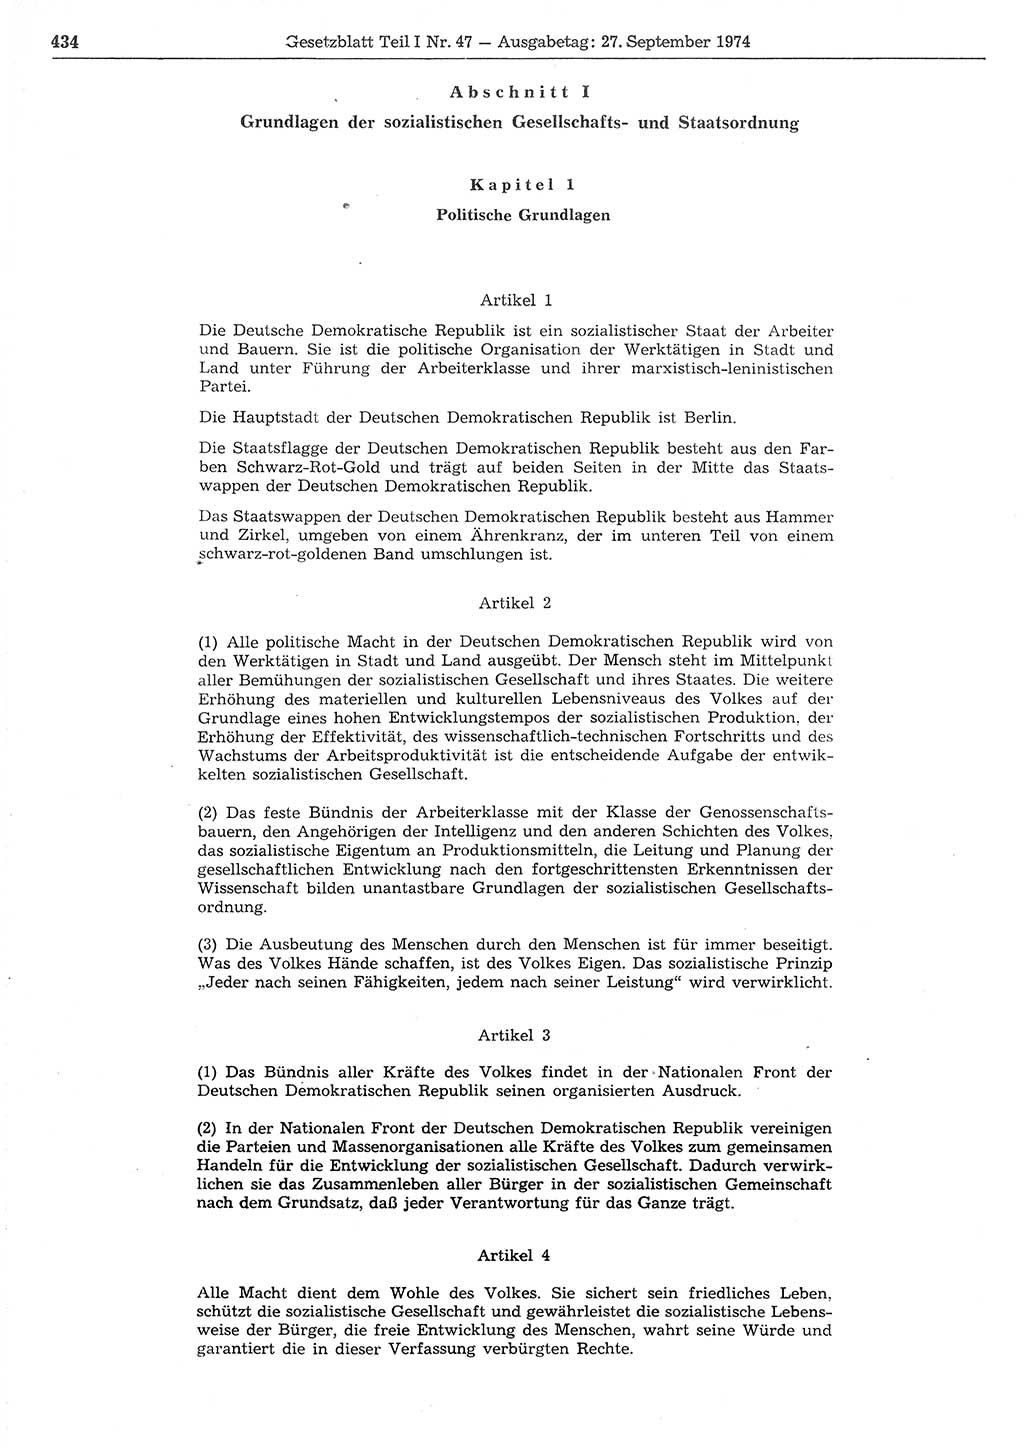 Gesetzblatt (GBl.) der Deutschen Demokratischen Republik (DDR) Teil Ⅰ 1974, Seite 434 (GBl. DDR Ⅰ 1974, S. 434)